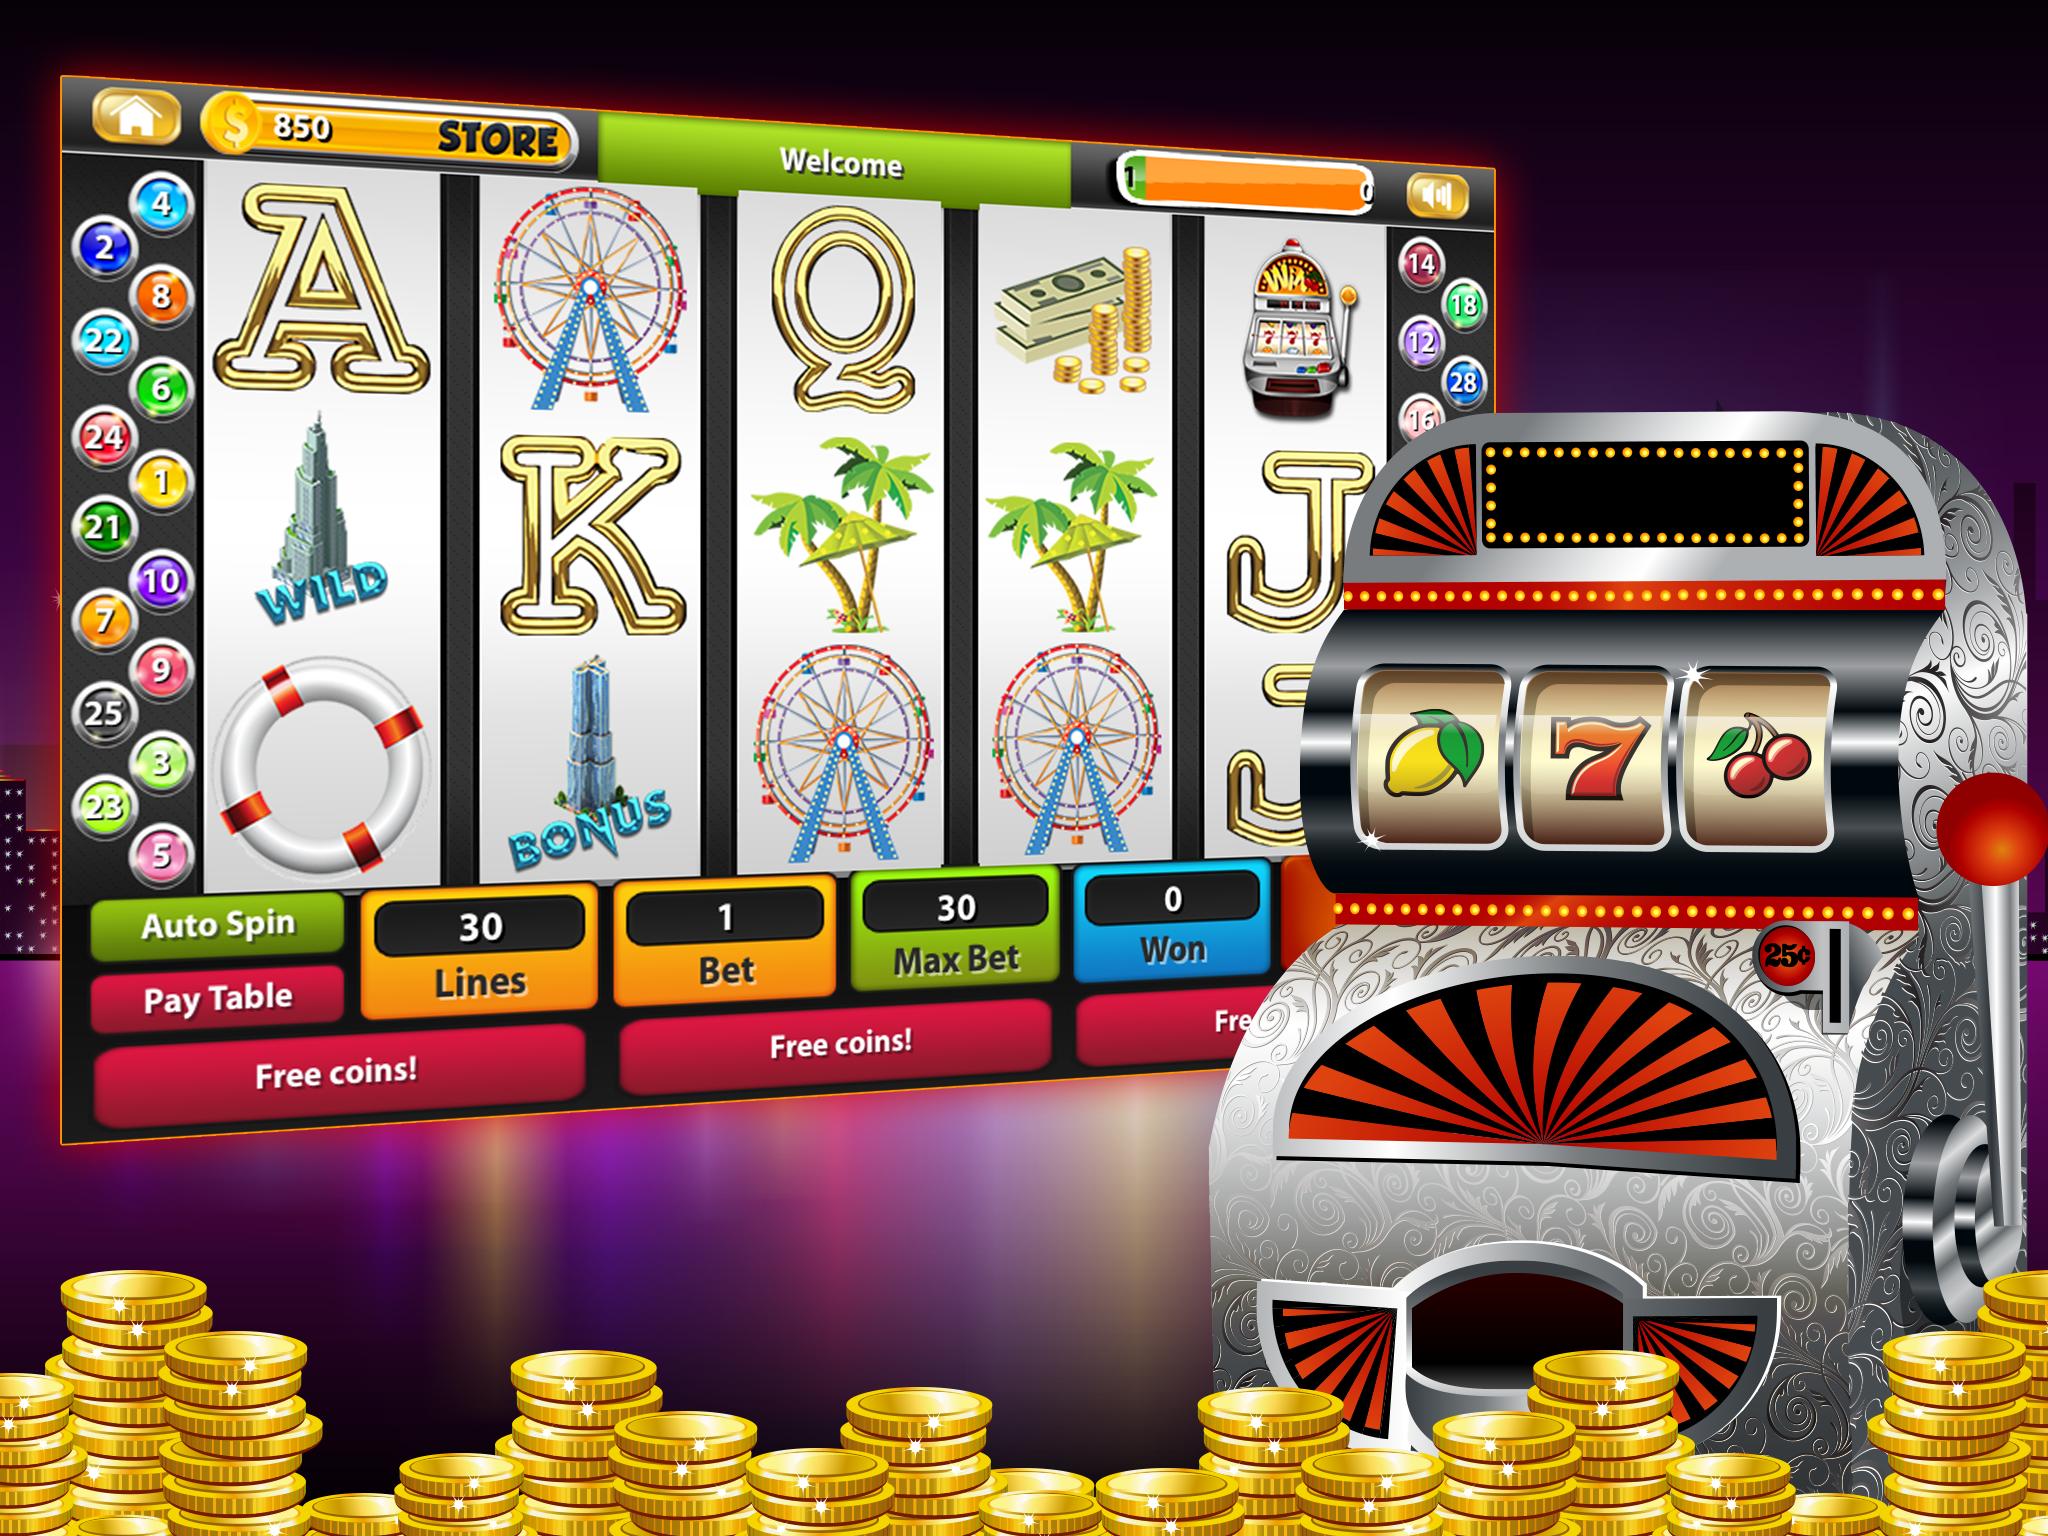 Лучшие казино на деньги topkazinonadengi com игровые автоматы слоты играть бесплатно без регистрации